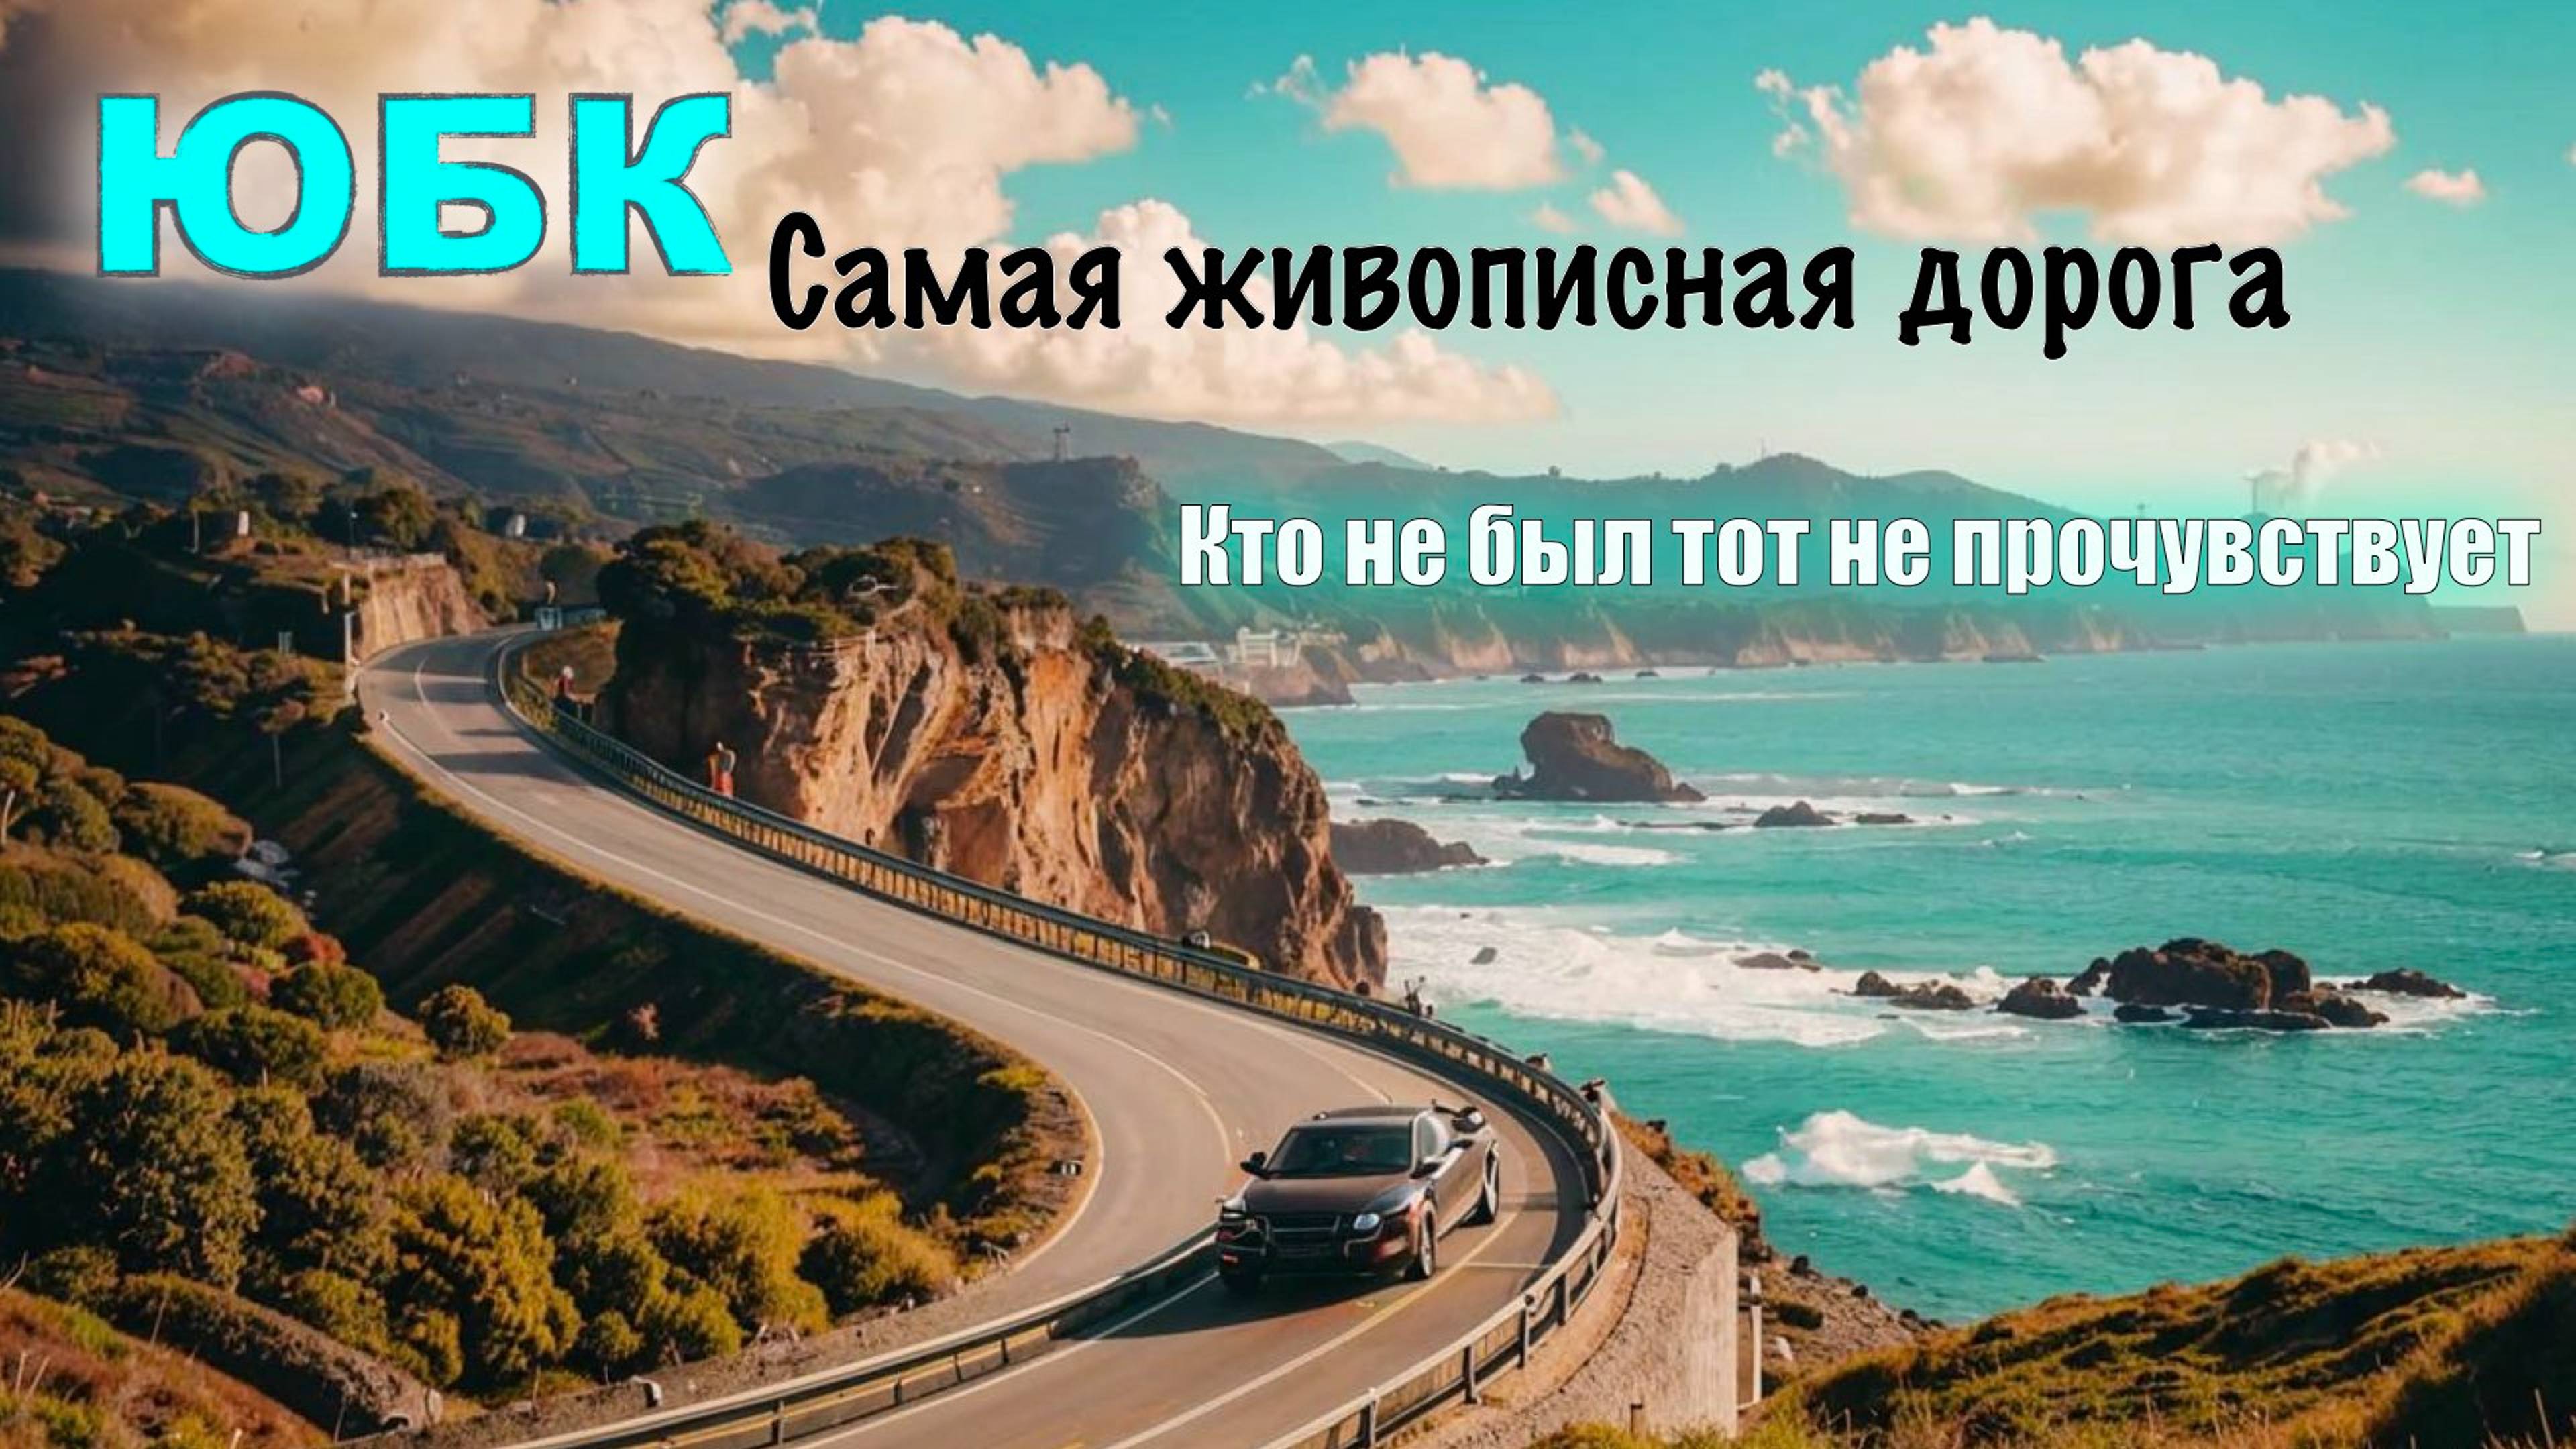 ✅Самая живописная дорога России✅ Крым, ЮБК. Алушта-Судак✅